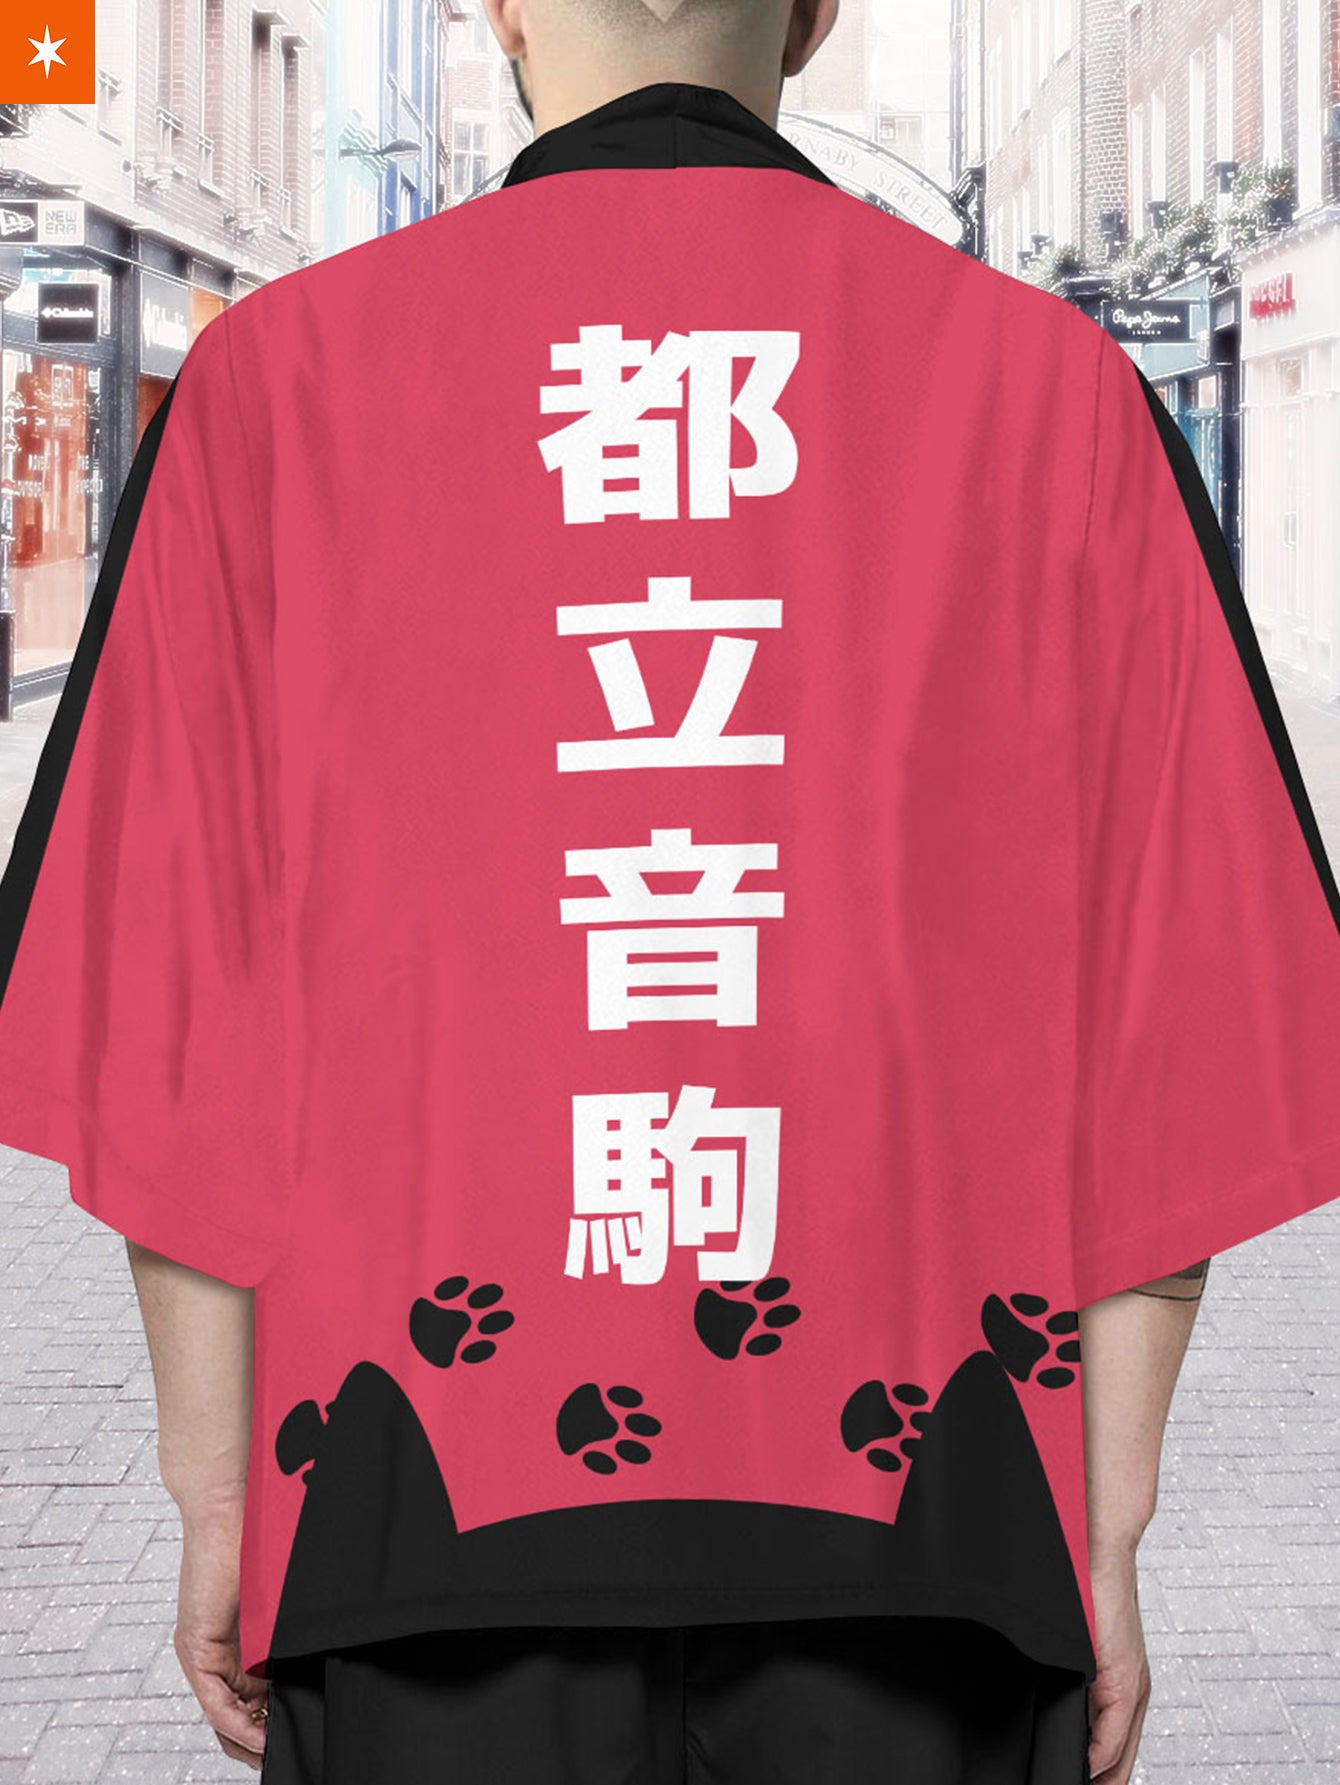 Fandomaniax - Nekoma High Cats Kimono